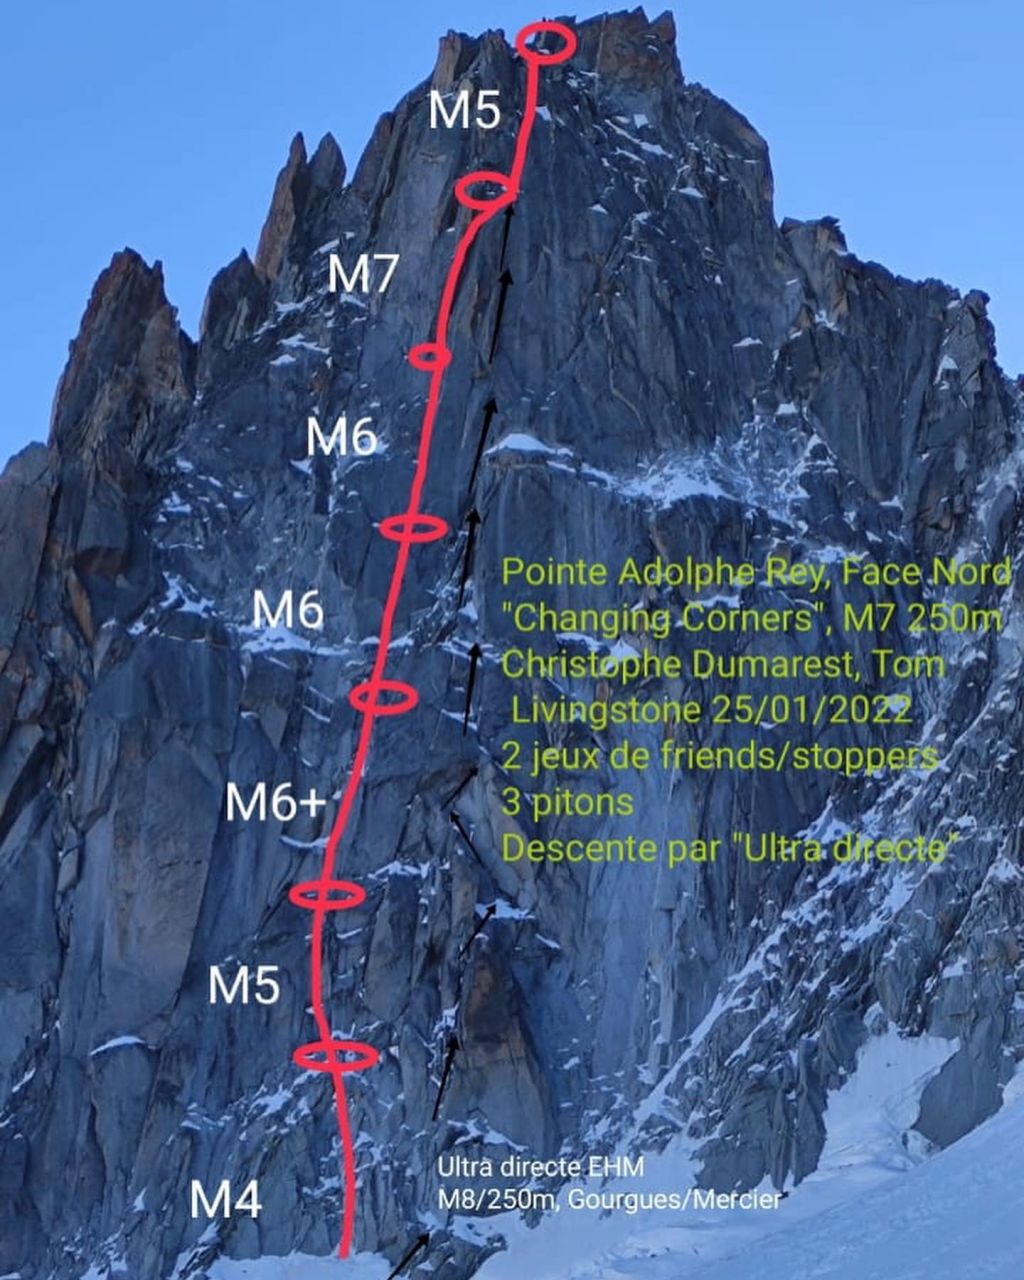 Маршрут "Changing corners"(250м, M7) по северной стене пика Пуант Адольф Ре (Pointe Adolphe Rey) высотой 3535 метров в массиве Монблан.